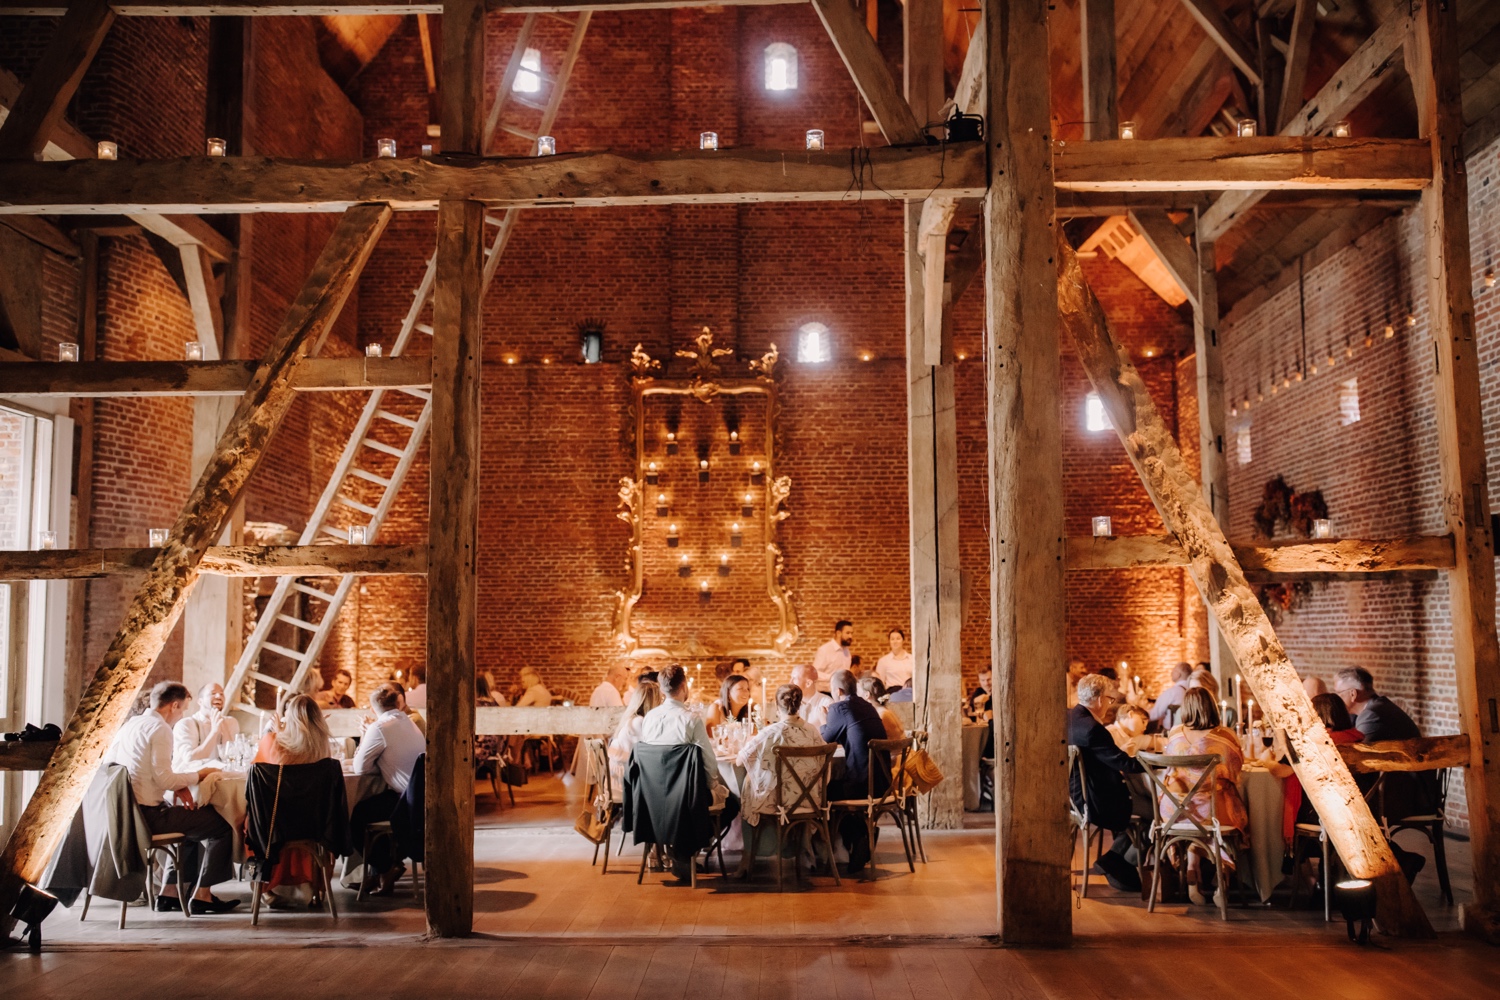 Huwelijksfotograaf Limburg - overzicht van de feestzaal van het kasteel van hoen